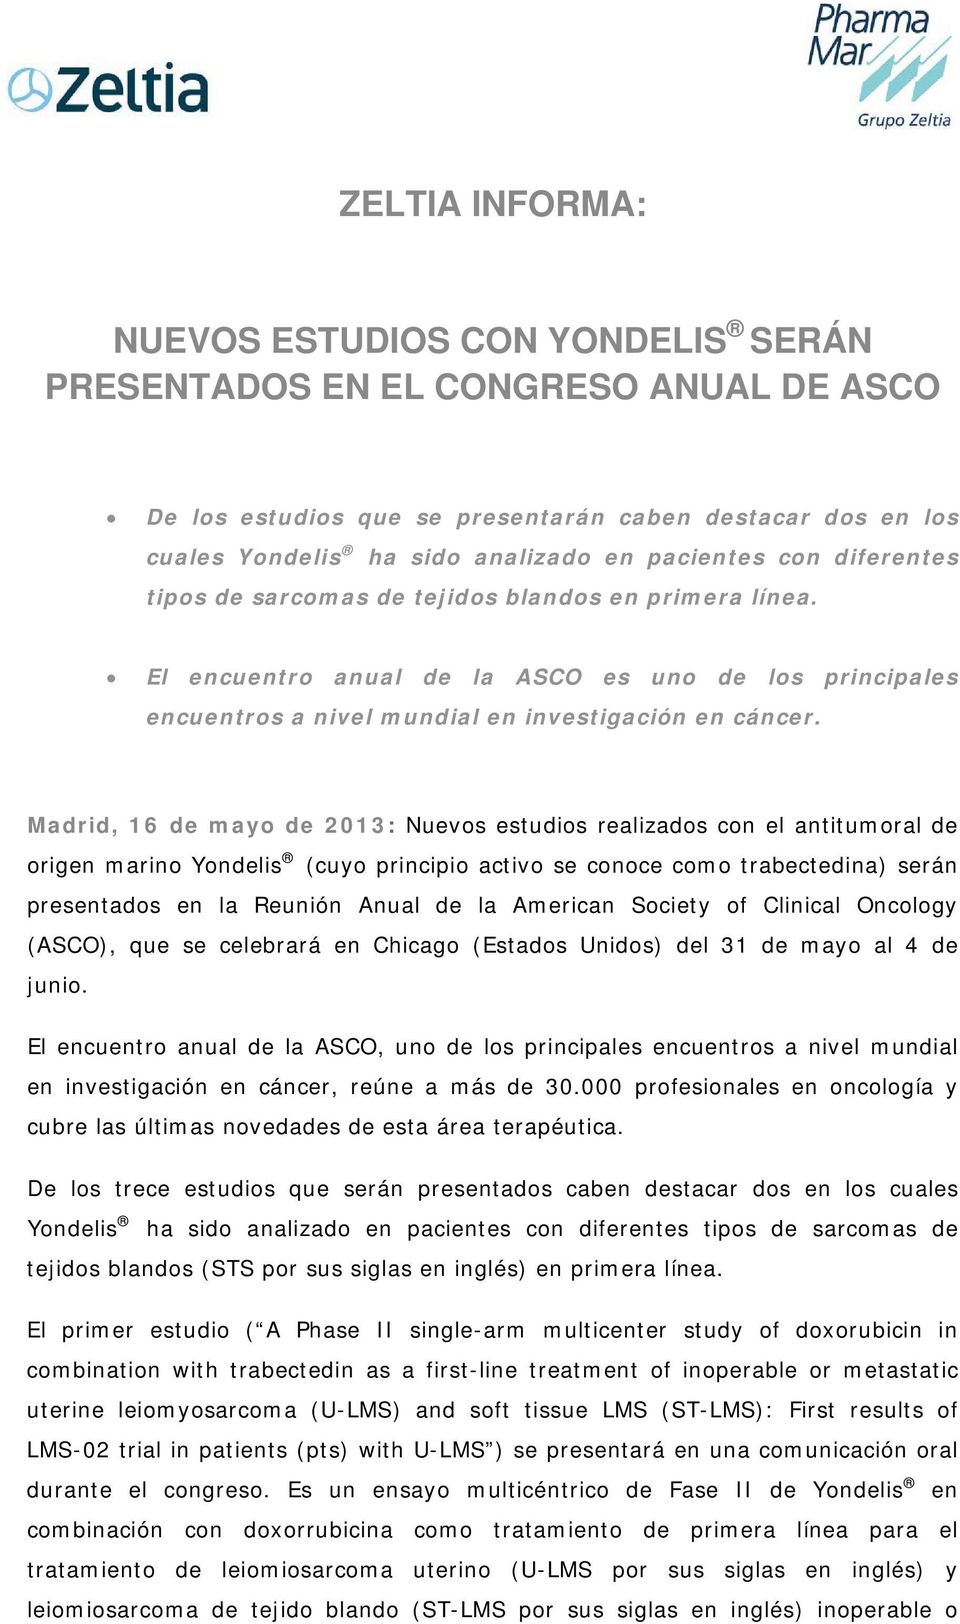 Madrid, 16 de mayo de 2013: Nuevos estudios realizados con el antitumoral de origen marino Yondelis (cuyo principio activo se conoce como trabectedina) serán presentados en la Reunión Anual de la